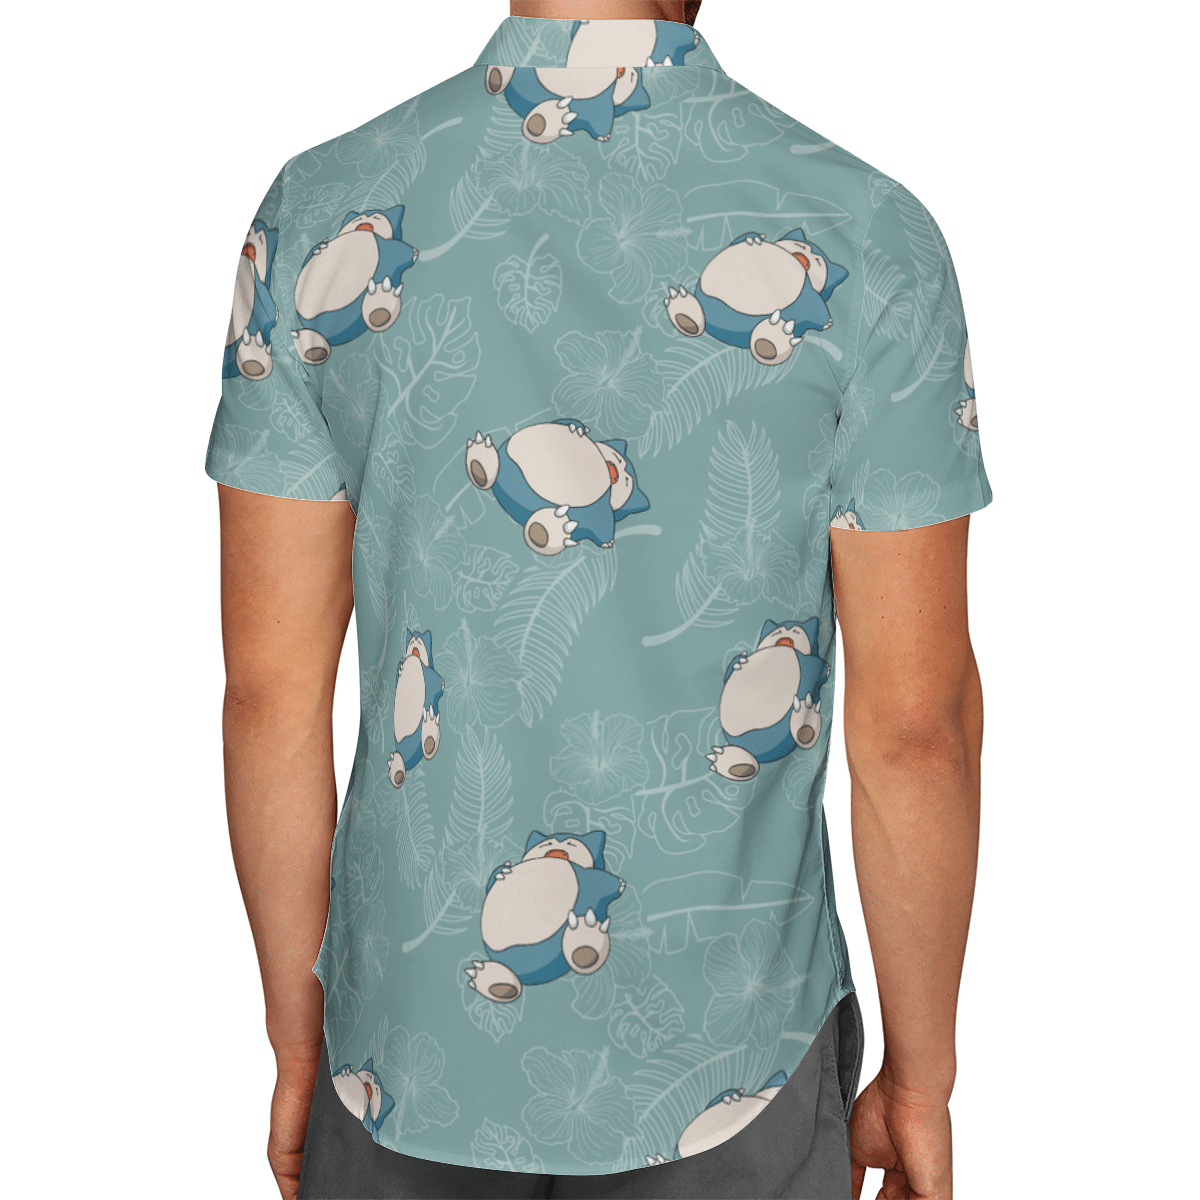 Snorlax hawaiian shirt and short 3.1